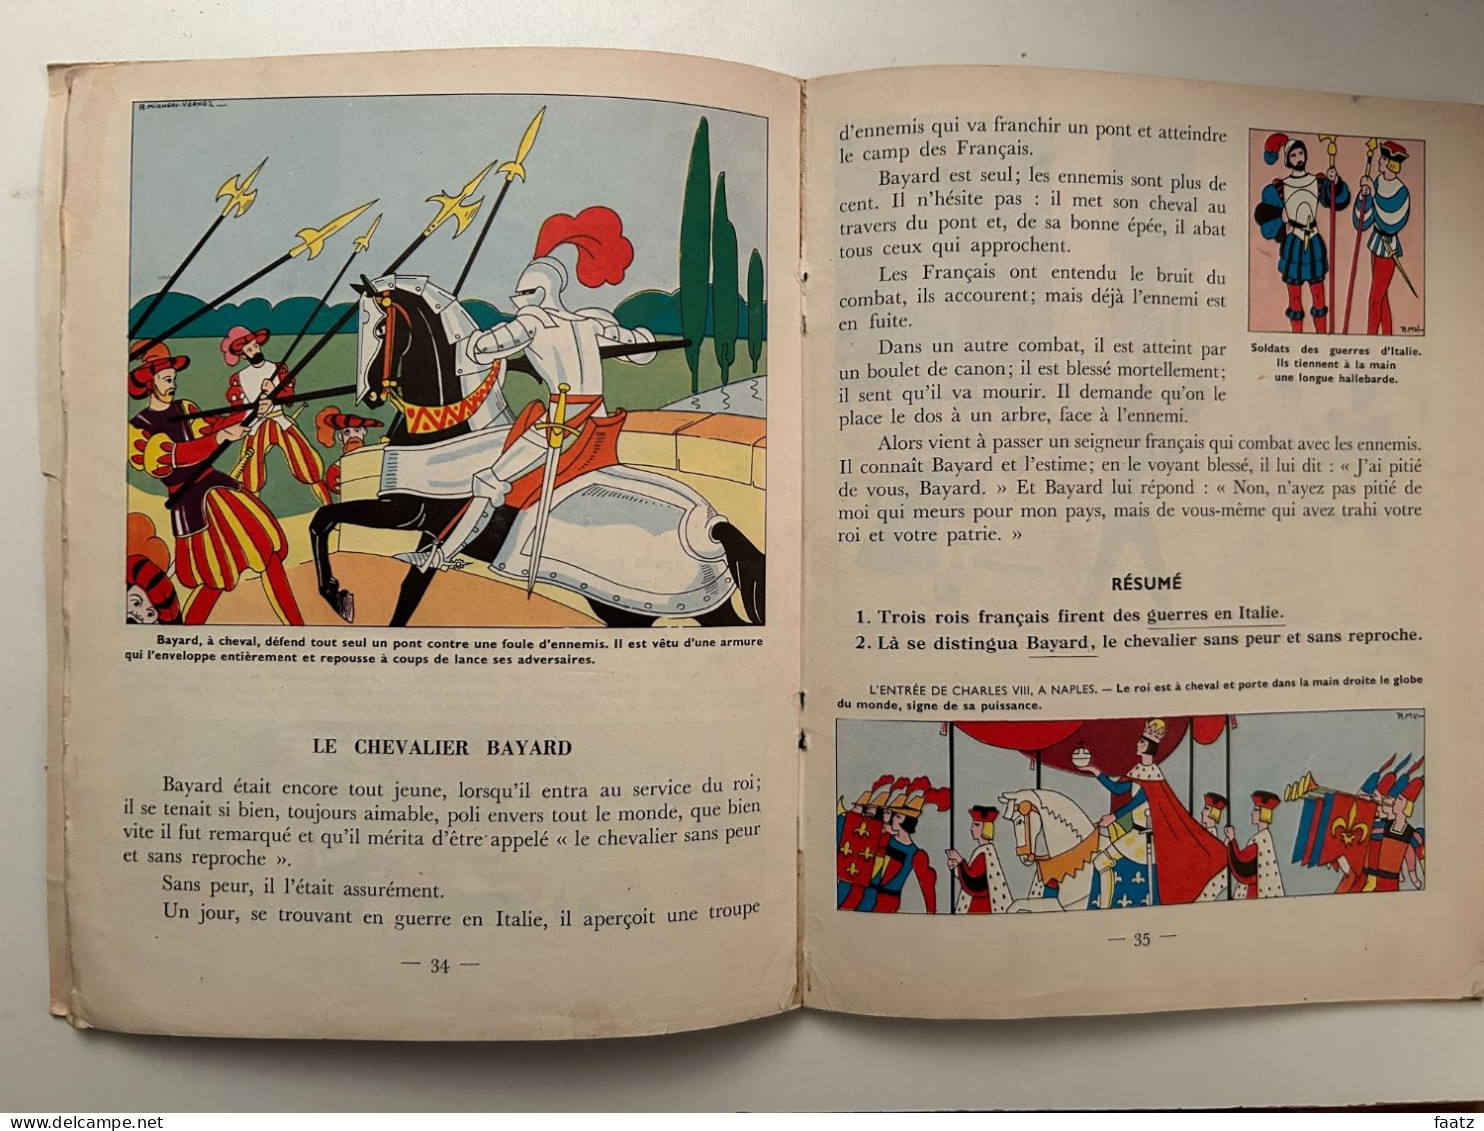 Histoire de France Enfantine + Géographie des Petits (Editions de l'Ecole)